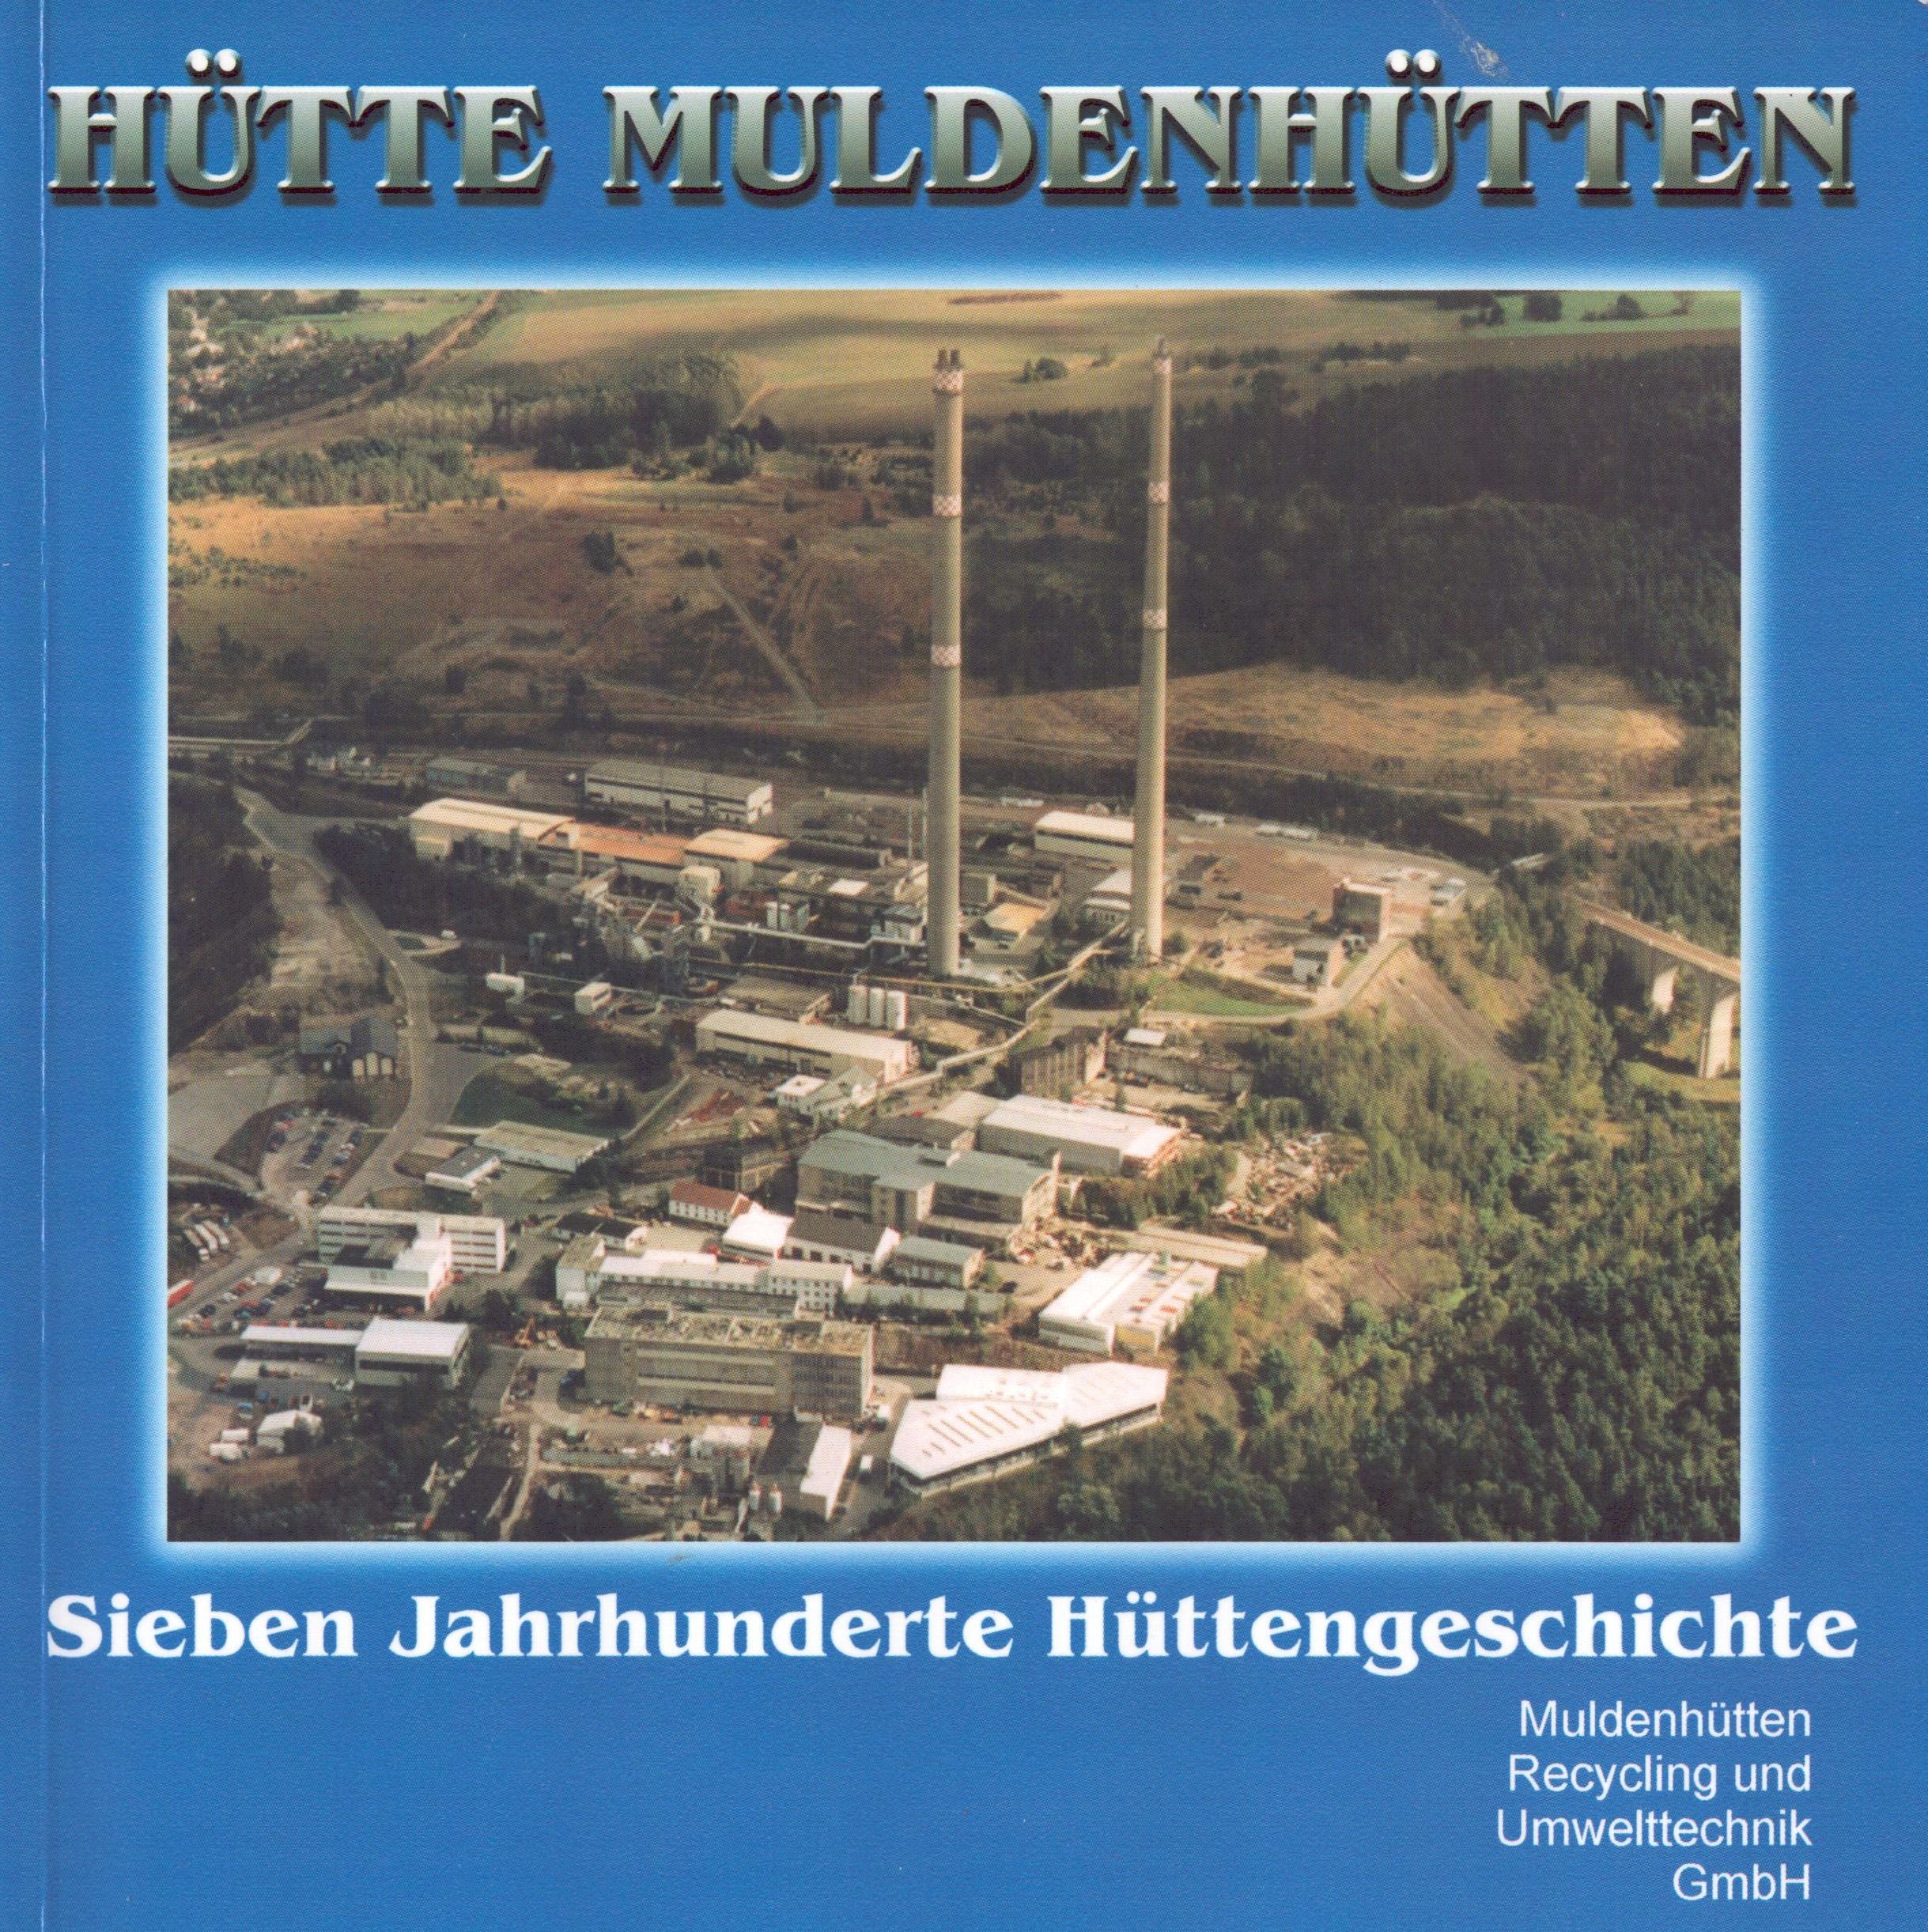 Hütte Muldenhütten - Sieben Jahrhunderte Hüttengeschichte (Archiv SAXONIA-FREIBERG-STIFTUNG CC BY-NC-SA)